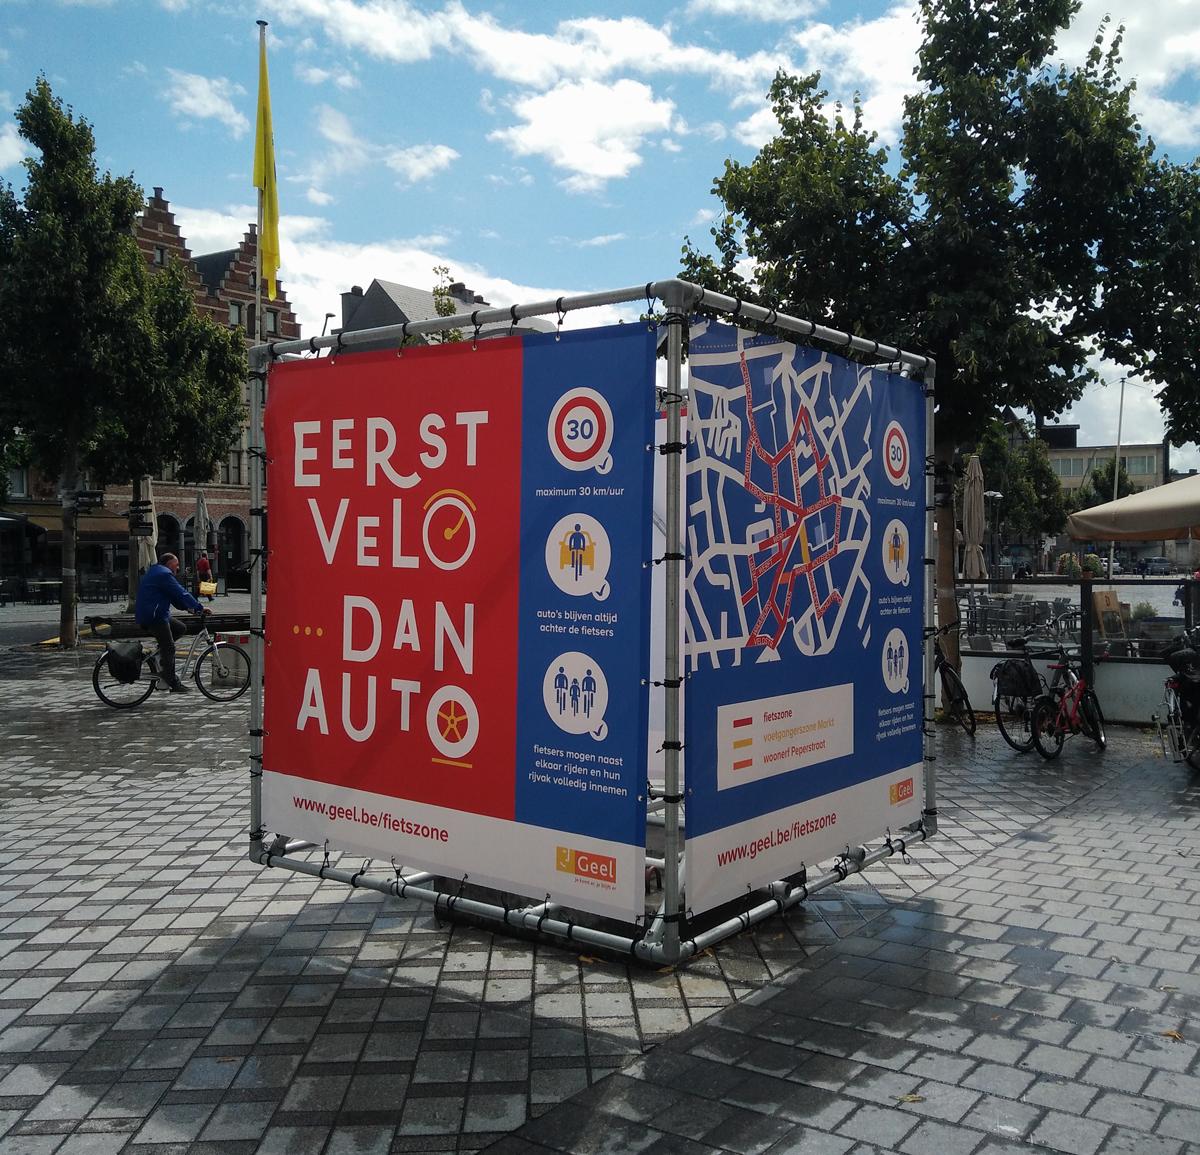 stad Geel fietszone communicatie straatbeeld